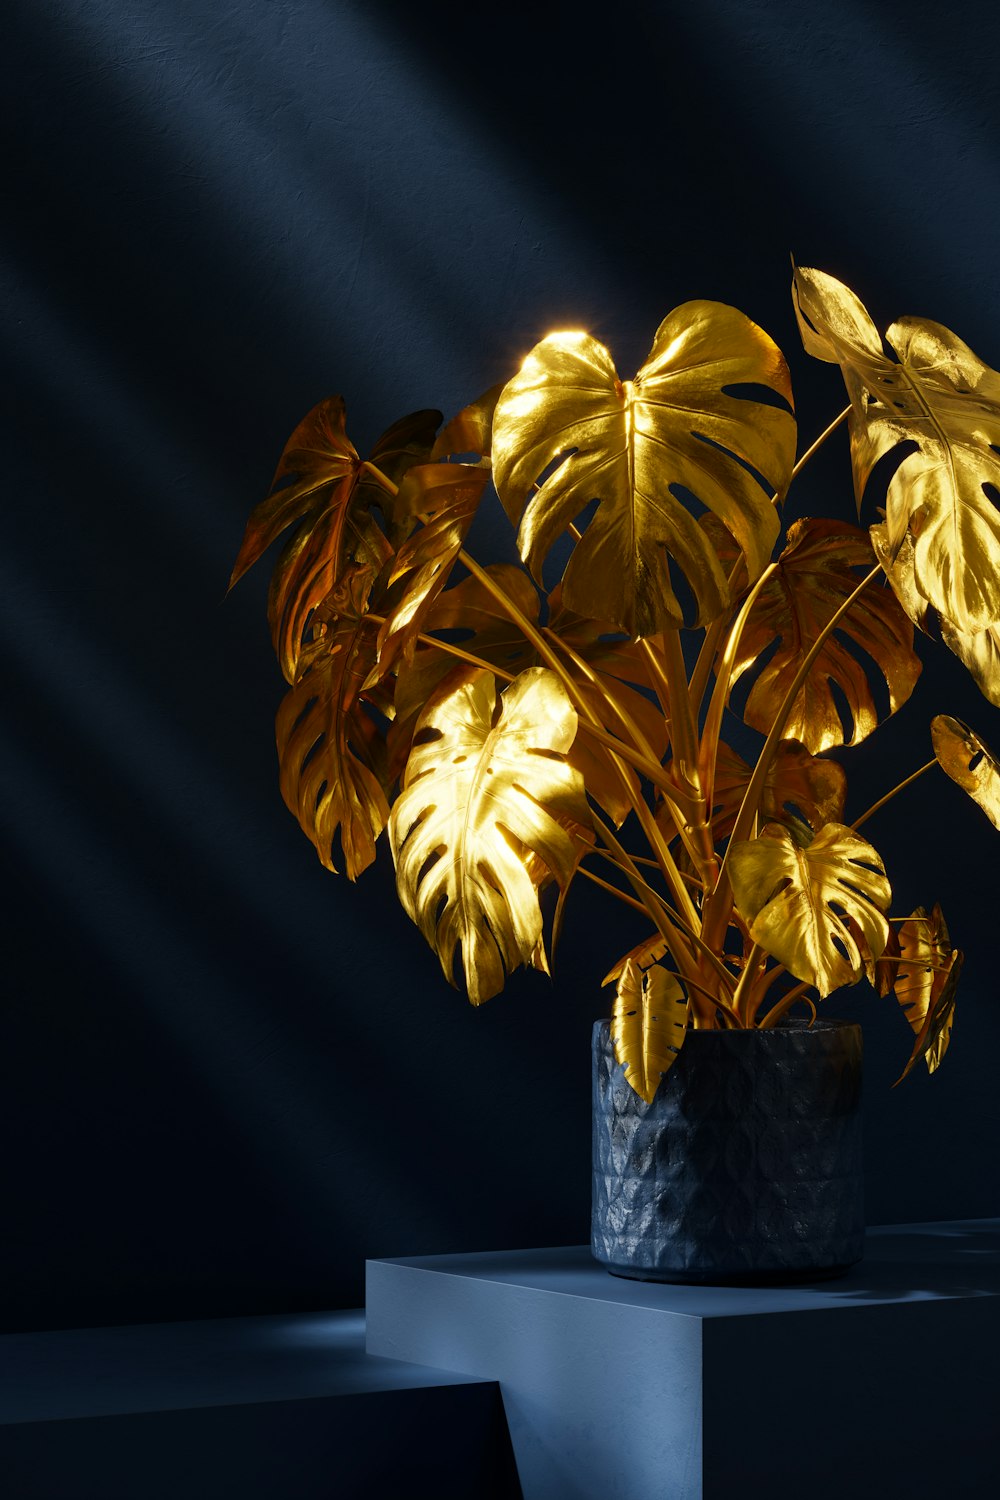 una pianta in vaso con foglie gialle in una stanza buia